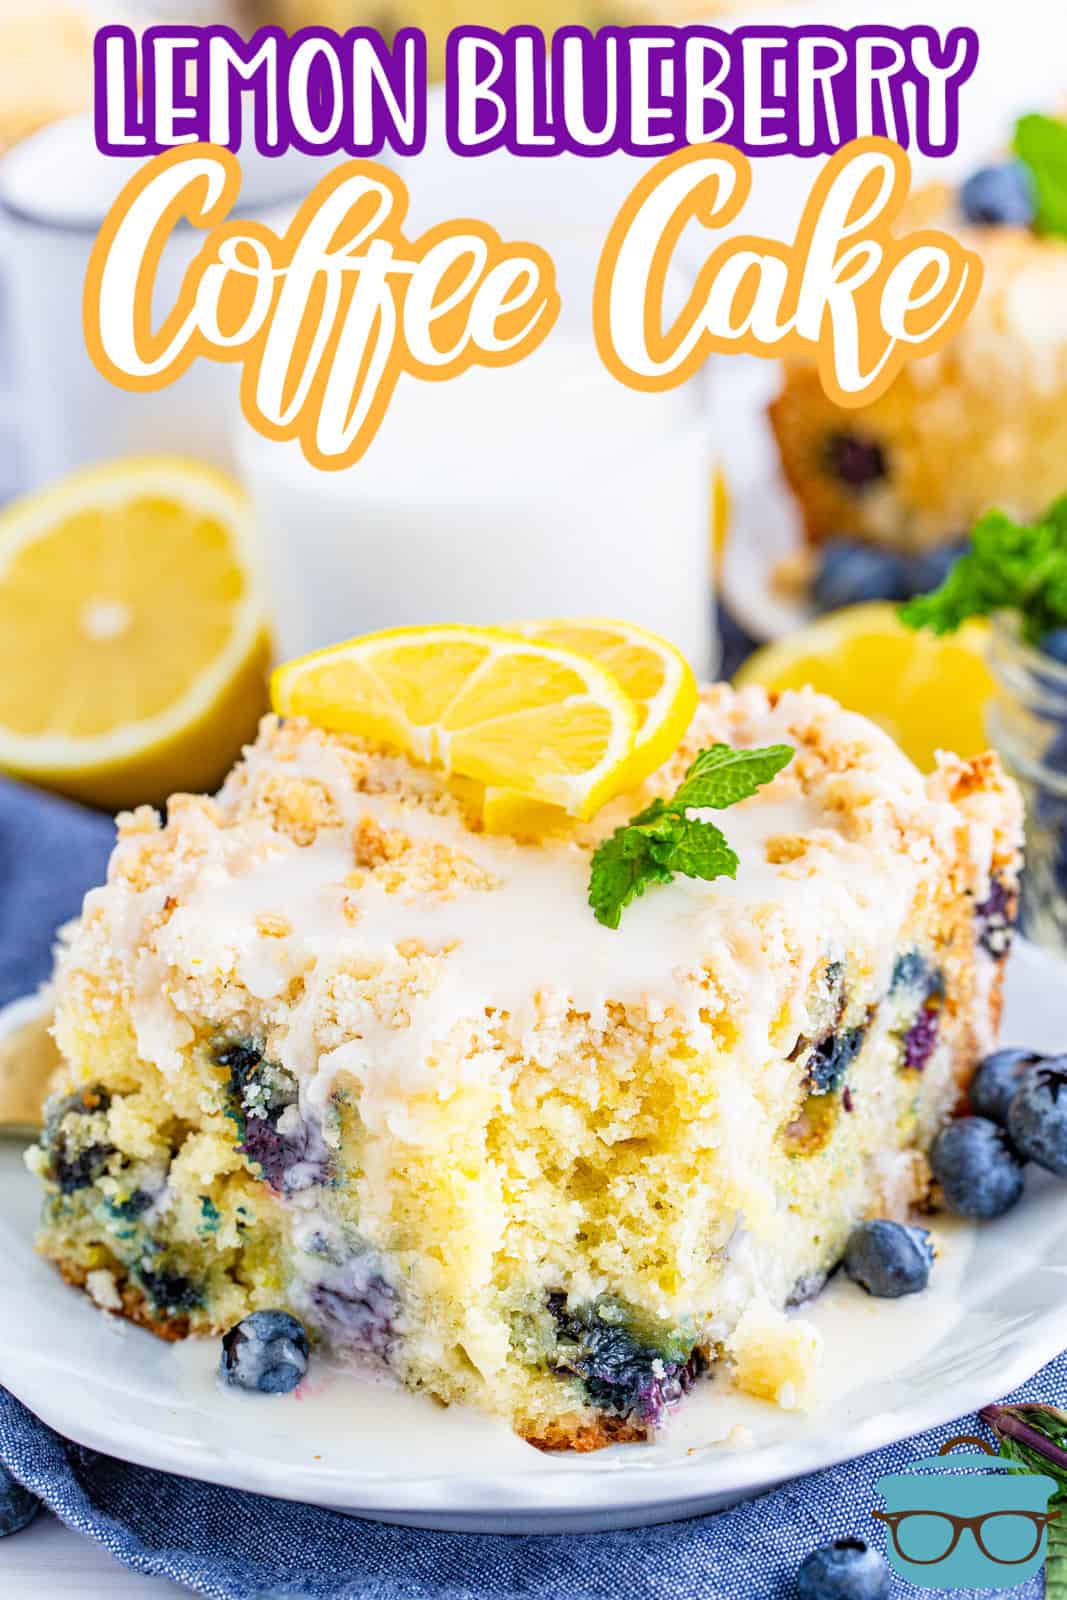 Immagine Pinterest di fetta di torta al caffè e mirtilli limone su piastra con morso tolto.